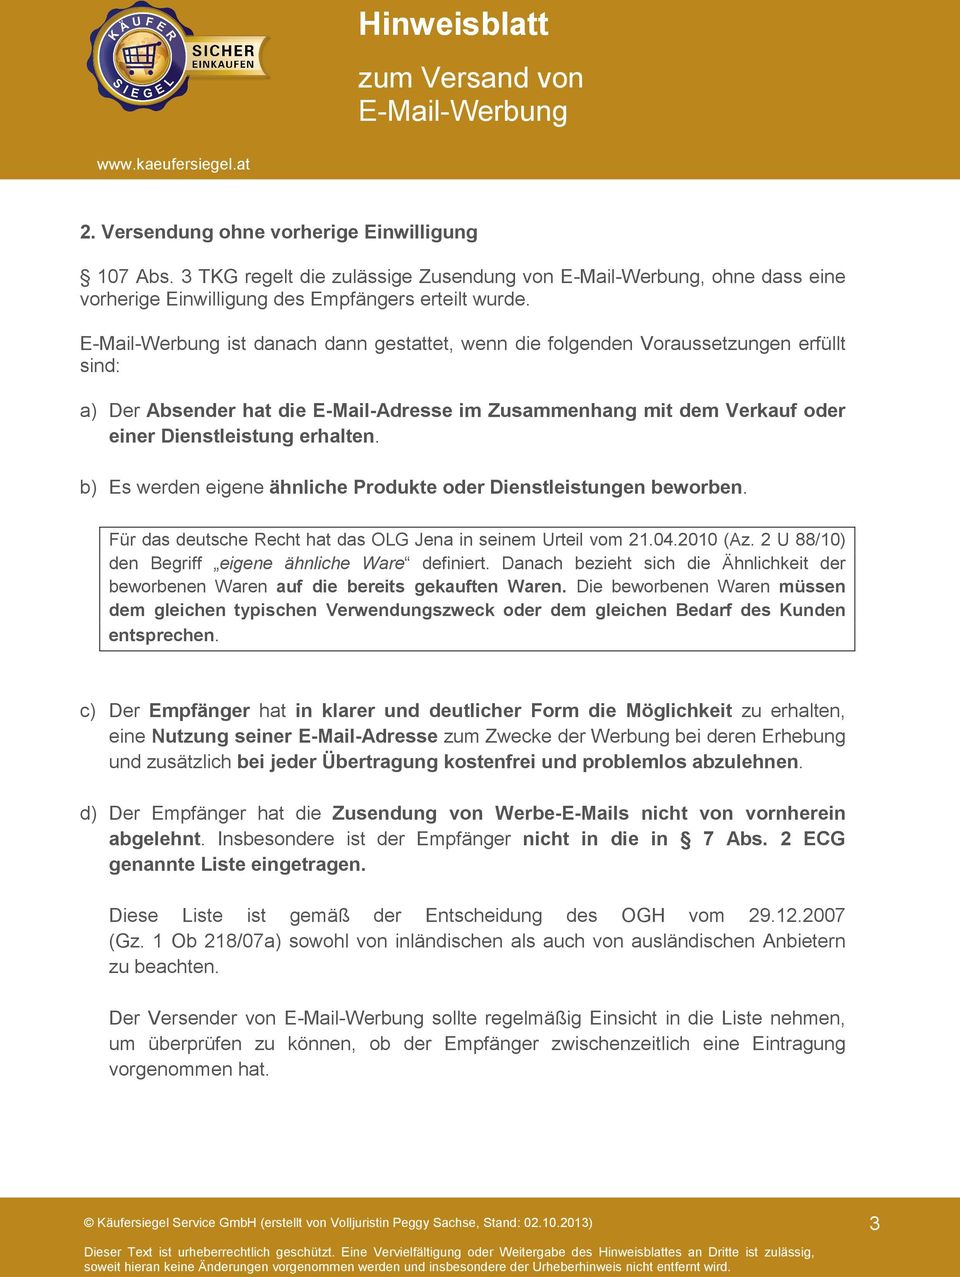 b) Es werden eigene ähnliche Produkte oder Dienstleistungen beworben. Für das deutsche Recht hat das OLG Jena in seinem Urteil vom 21.04.2010 (Az.